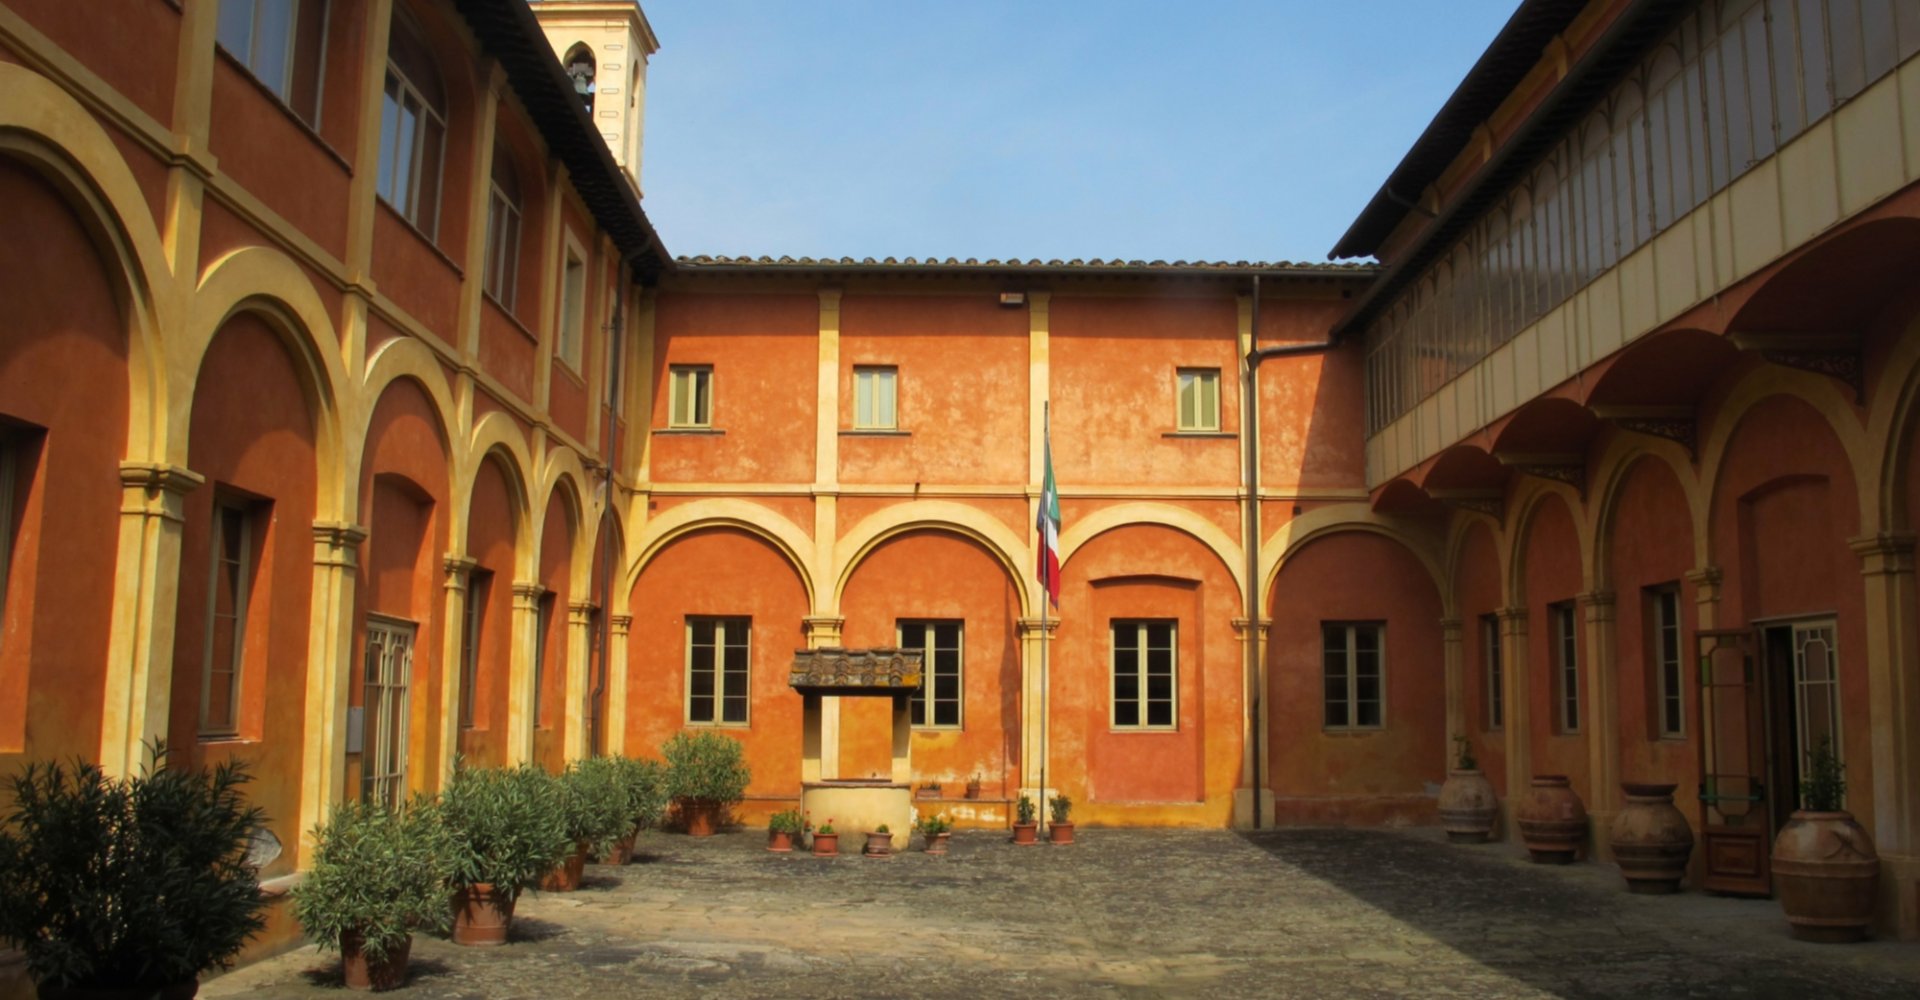 Museo del Monasterio Santa Chiara (claustro), San Miniato